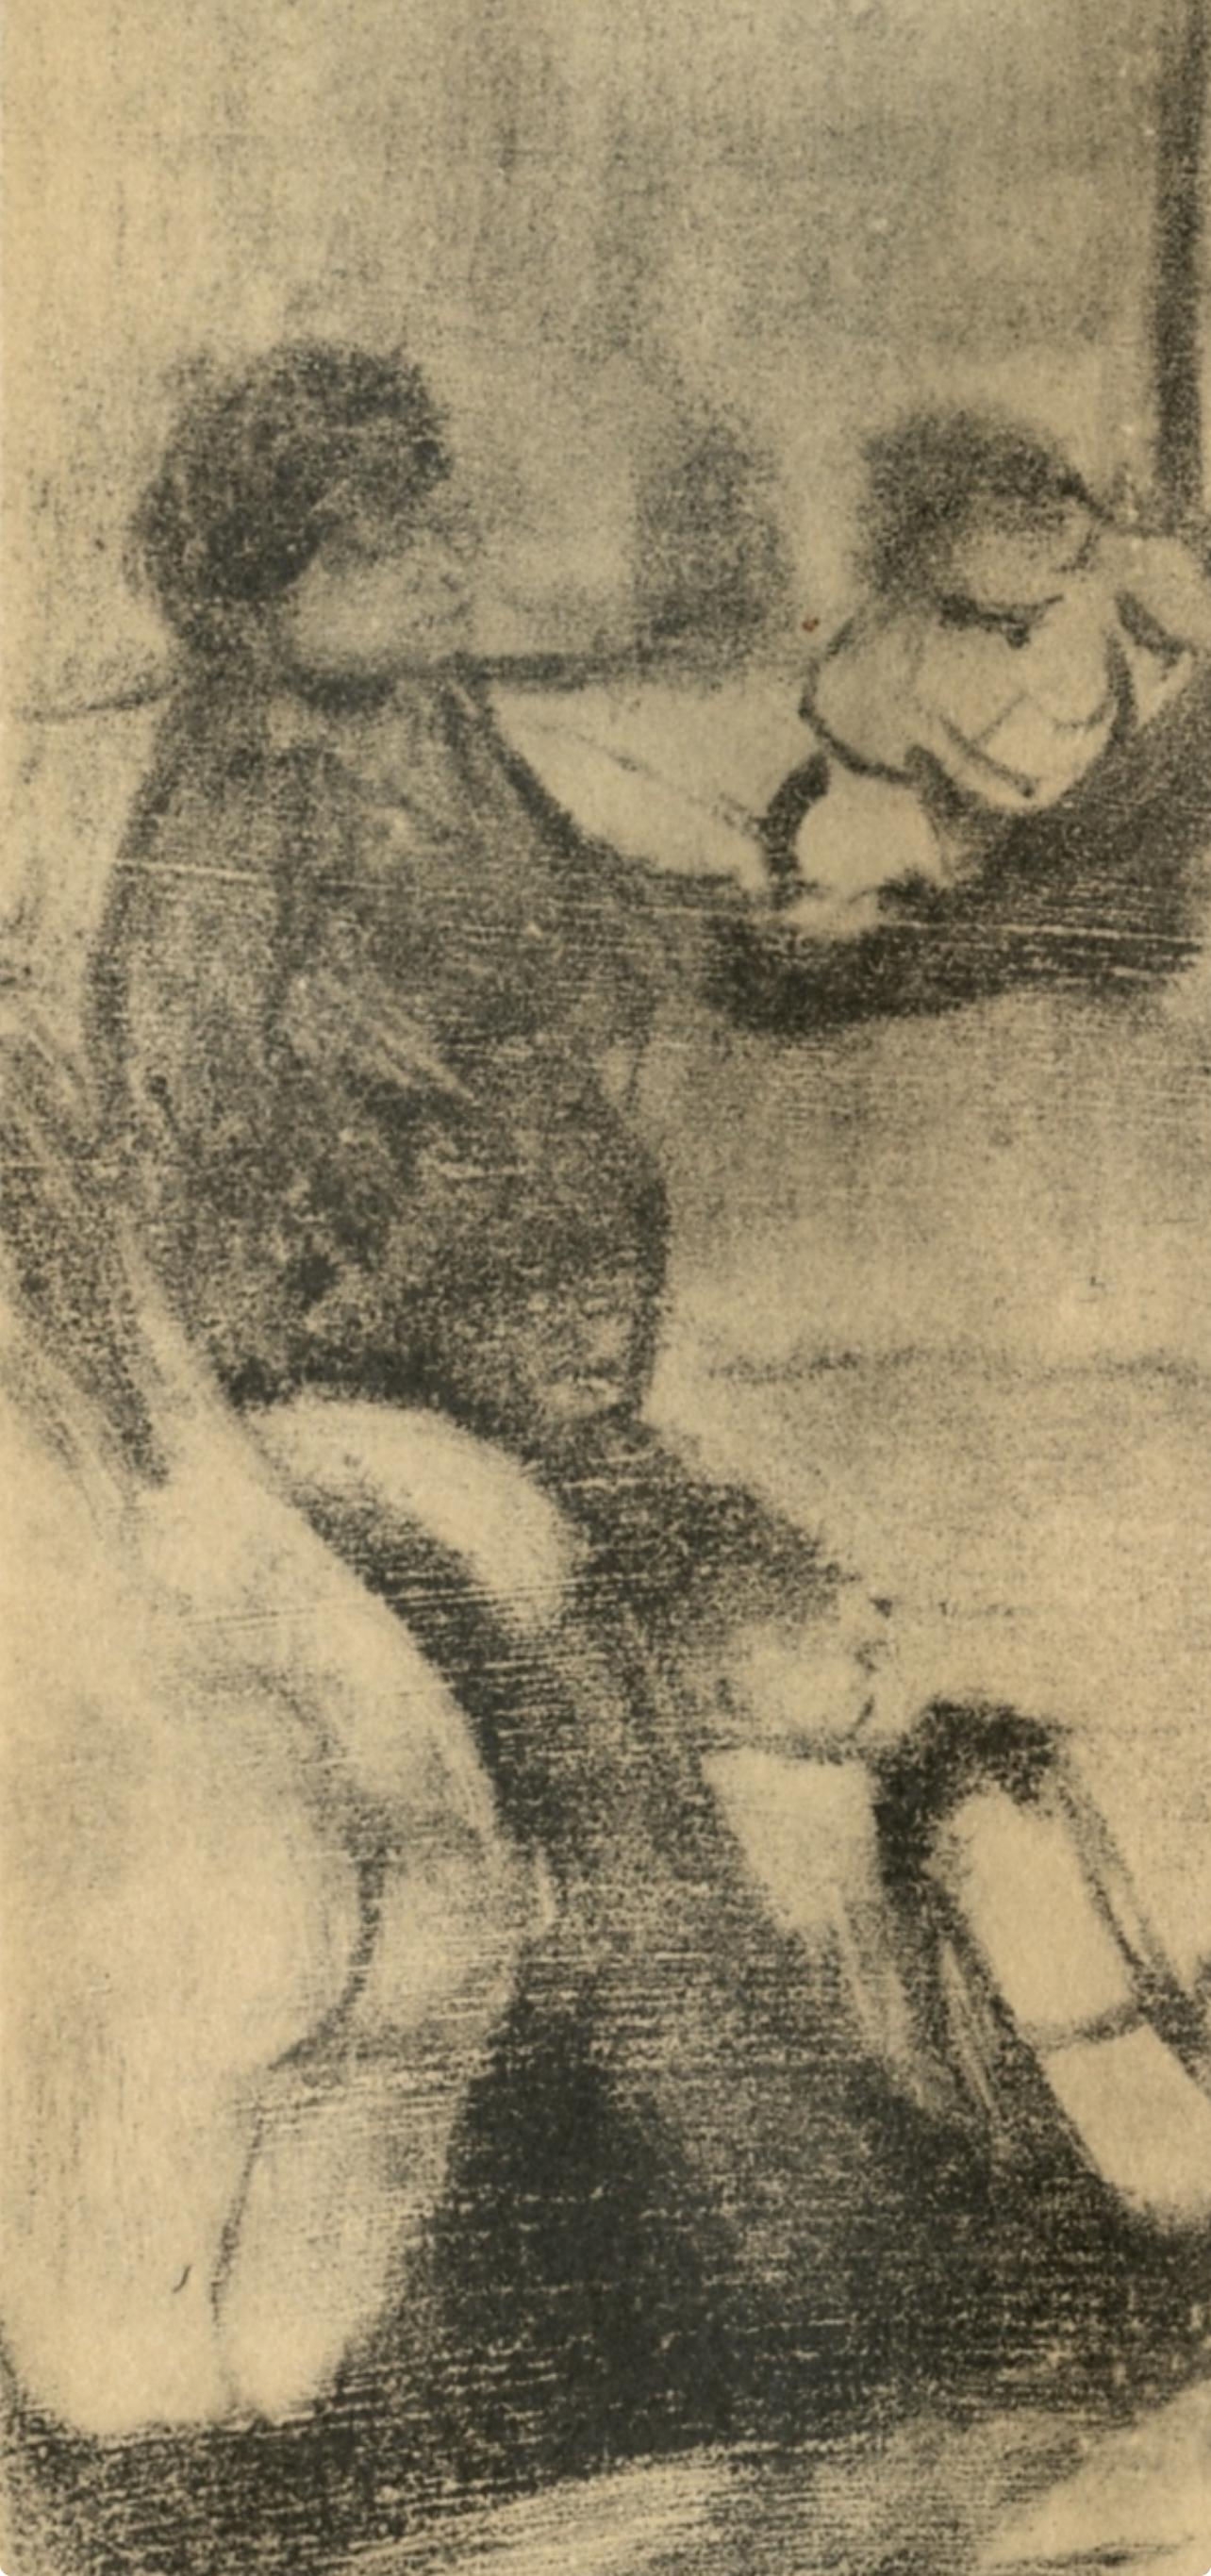 Degas, Au Salon, Les Monotypes (after) - Print by Edgar Degas